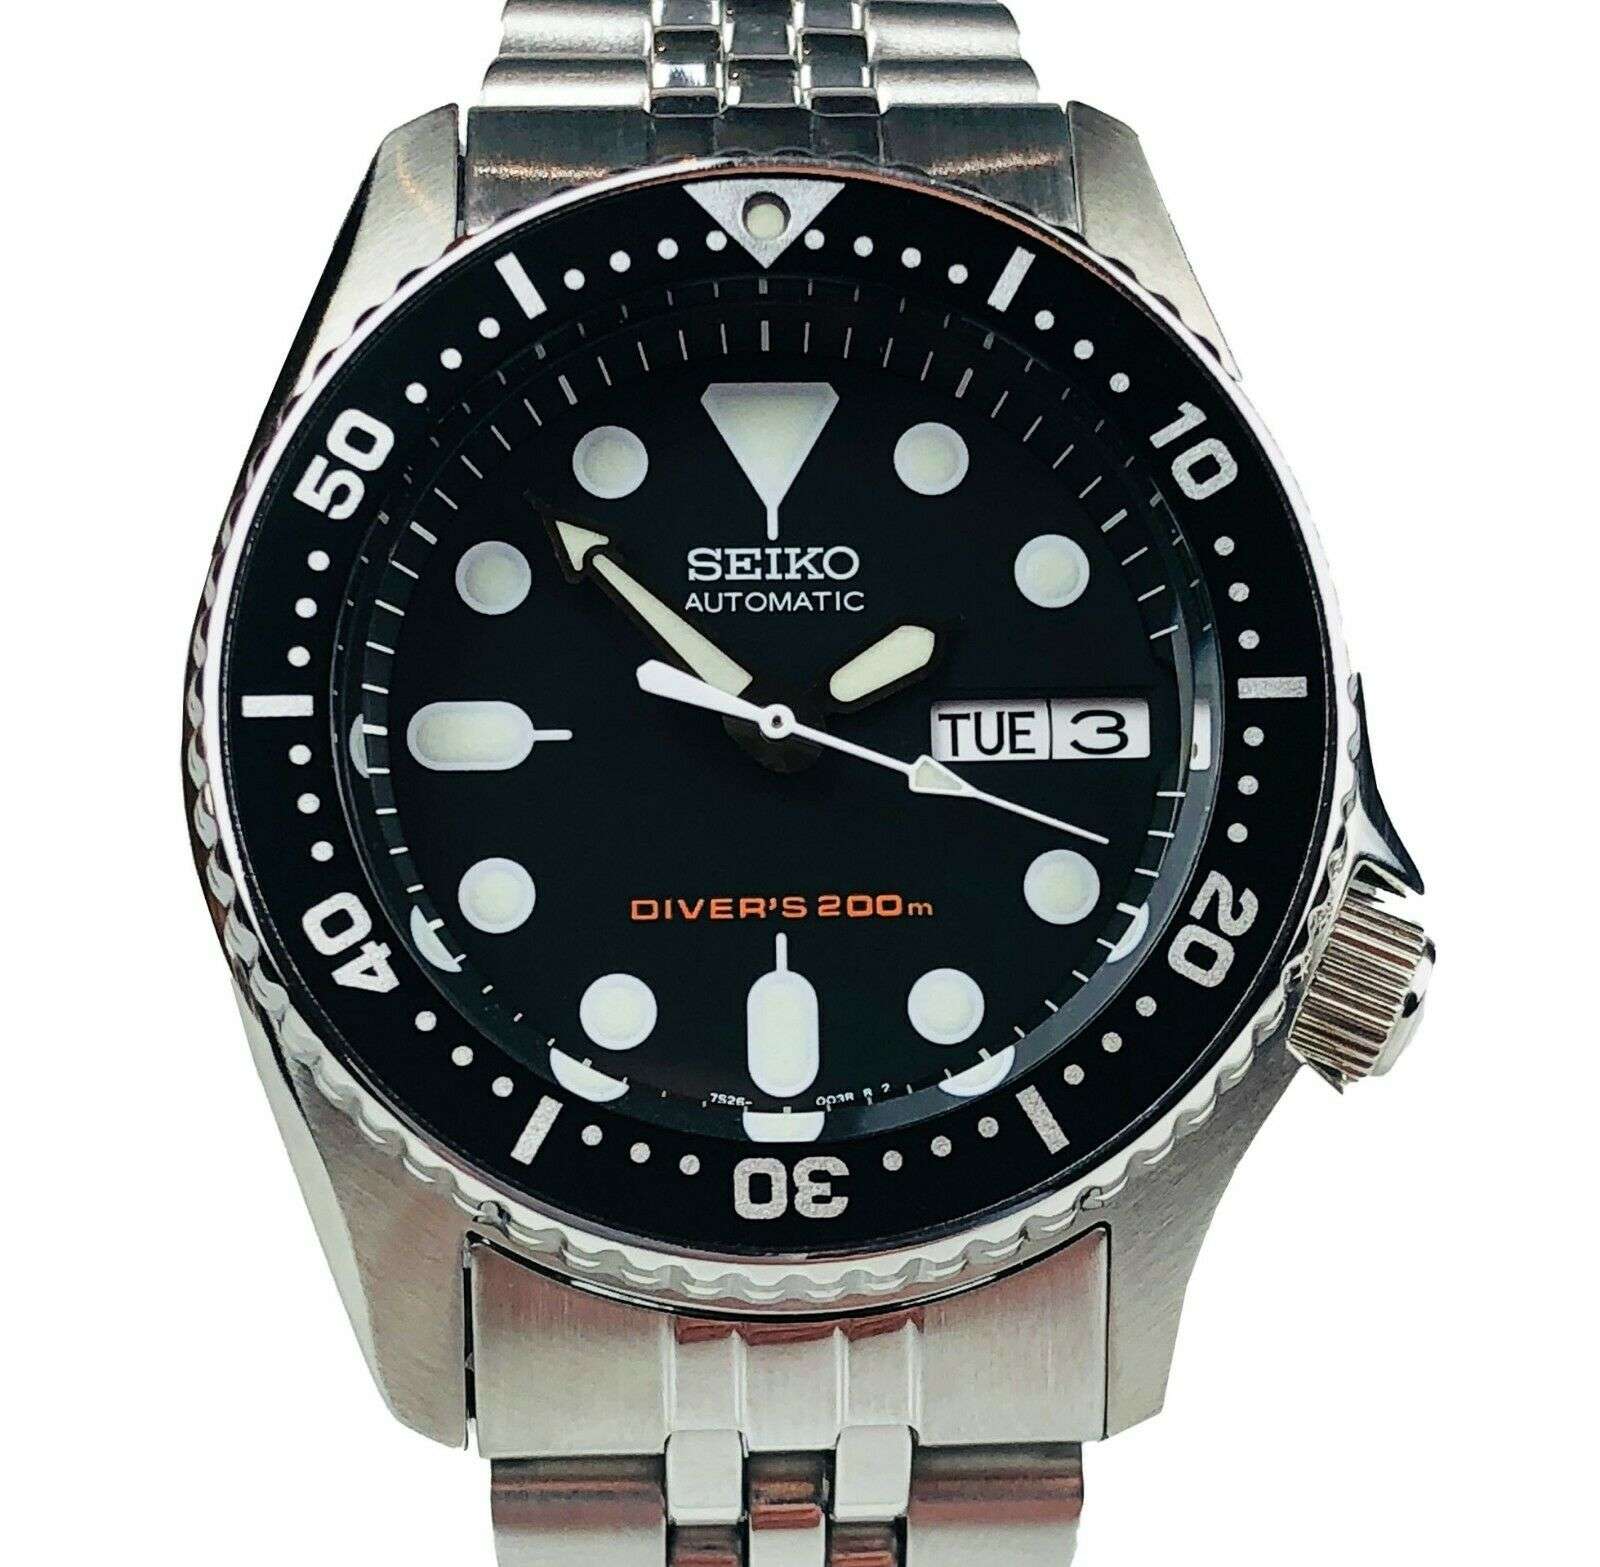 Seiko Pro Scuba Divers 200m Automatic Men's Watch SKX013K2